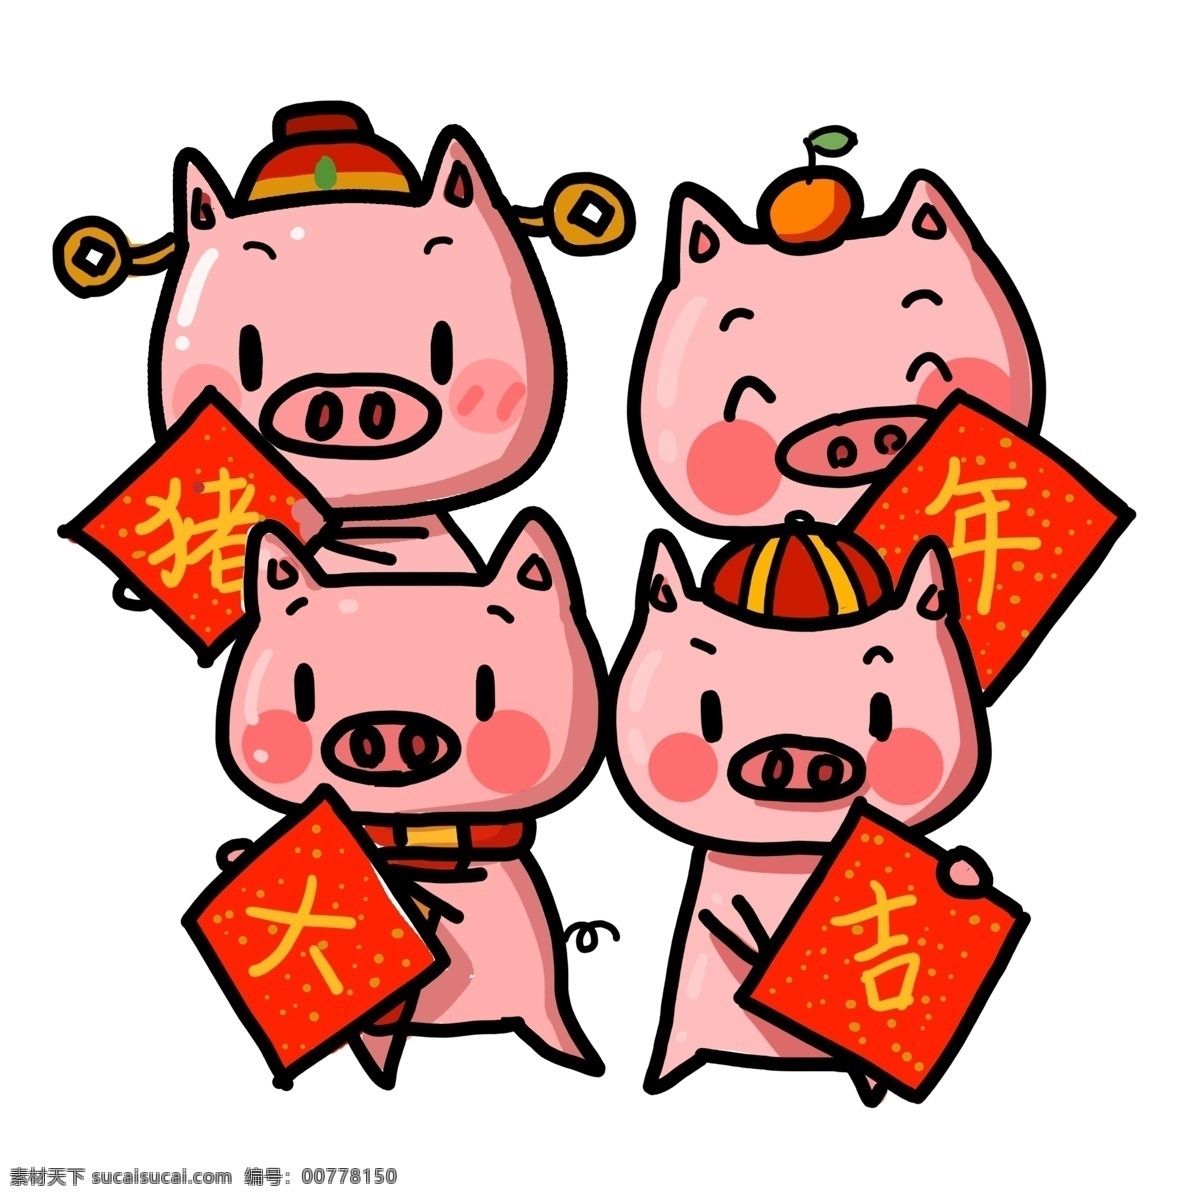 猪年 大吉 四小 猪 拜年 插画 元素 红色 喜庆 中国风 春节 潮漫 手绘 猪年大吉 四只小猪 拜年小猪 新春 新年 2019年 小猪形象 猪年形象